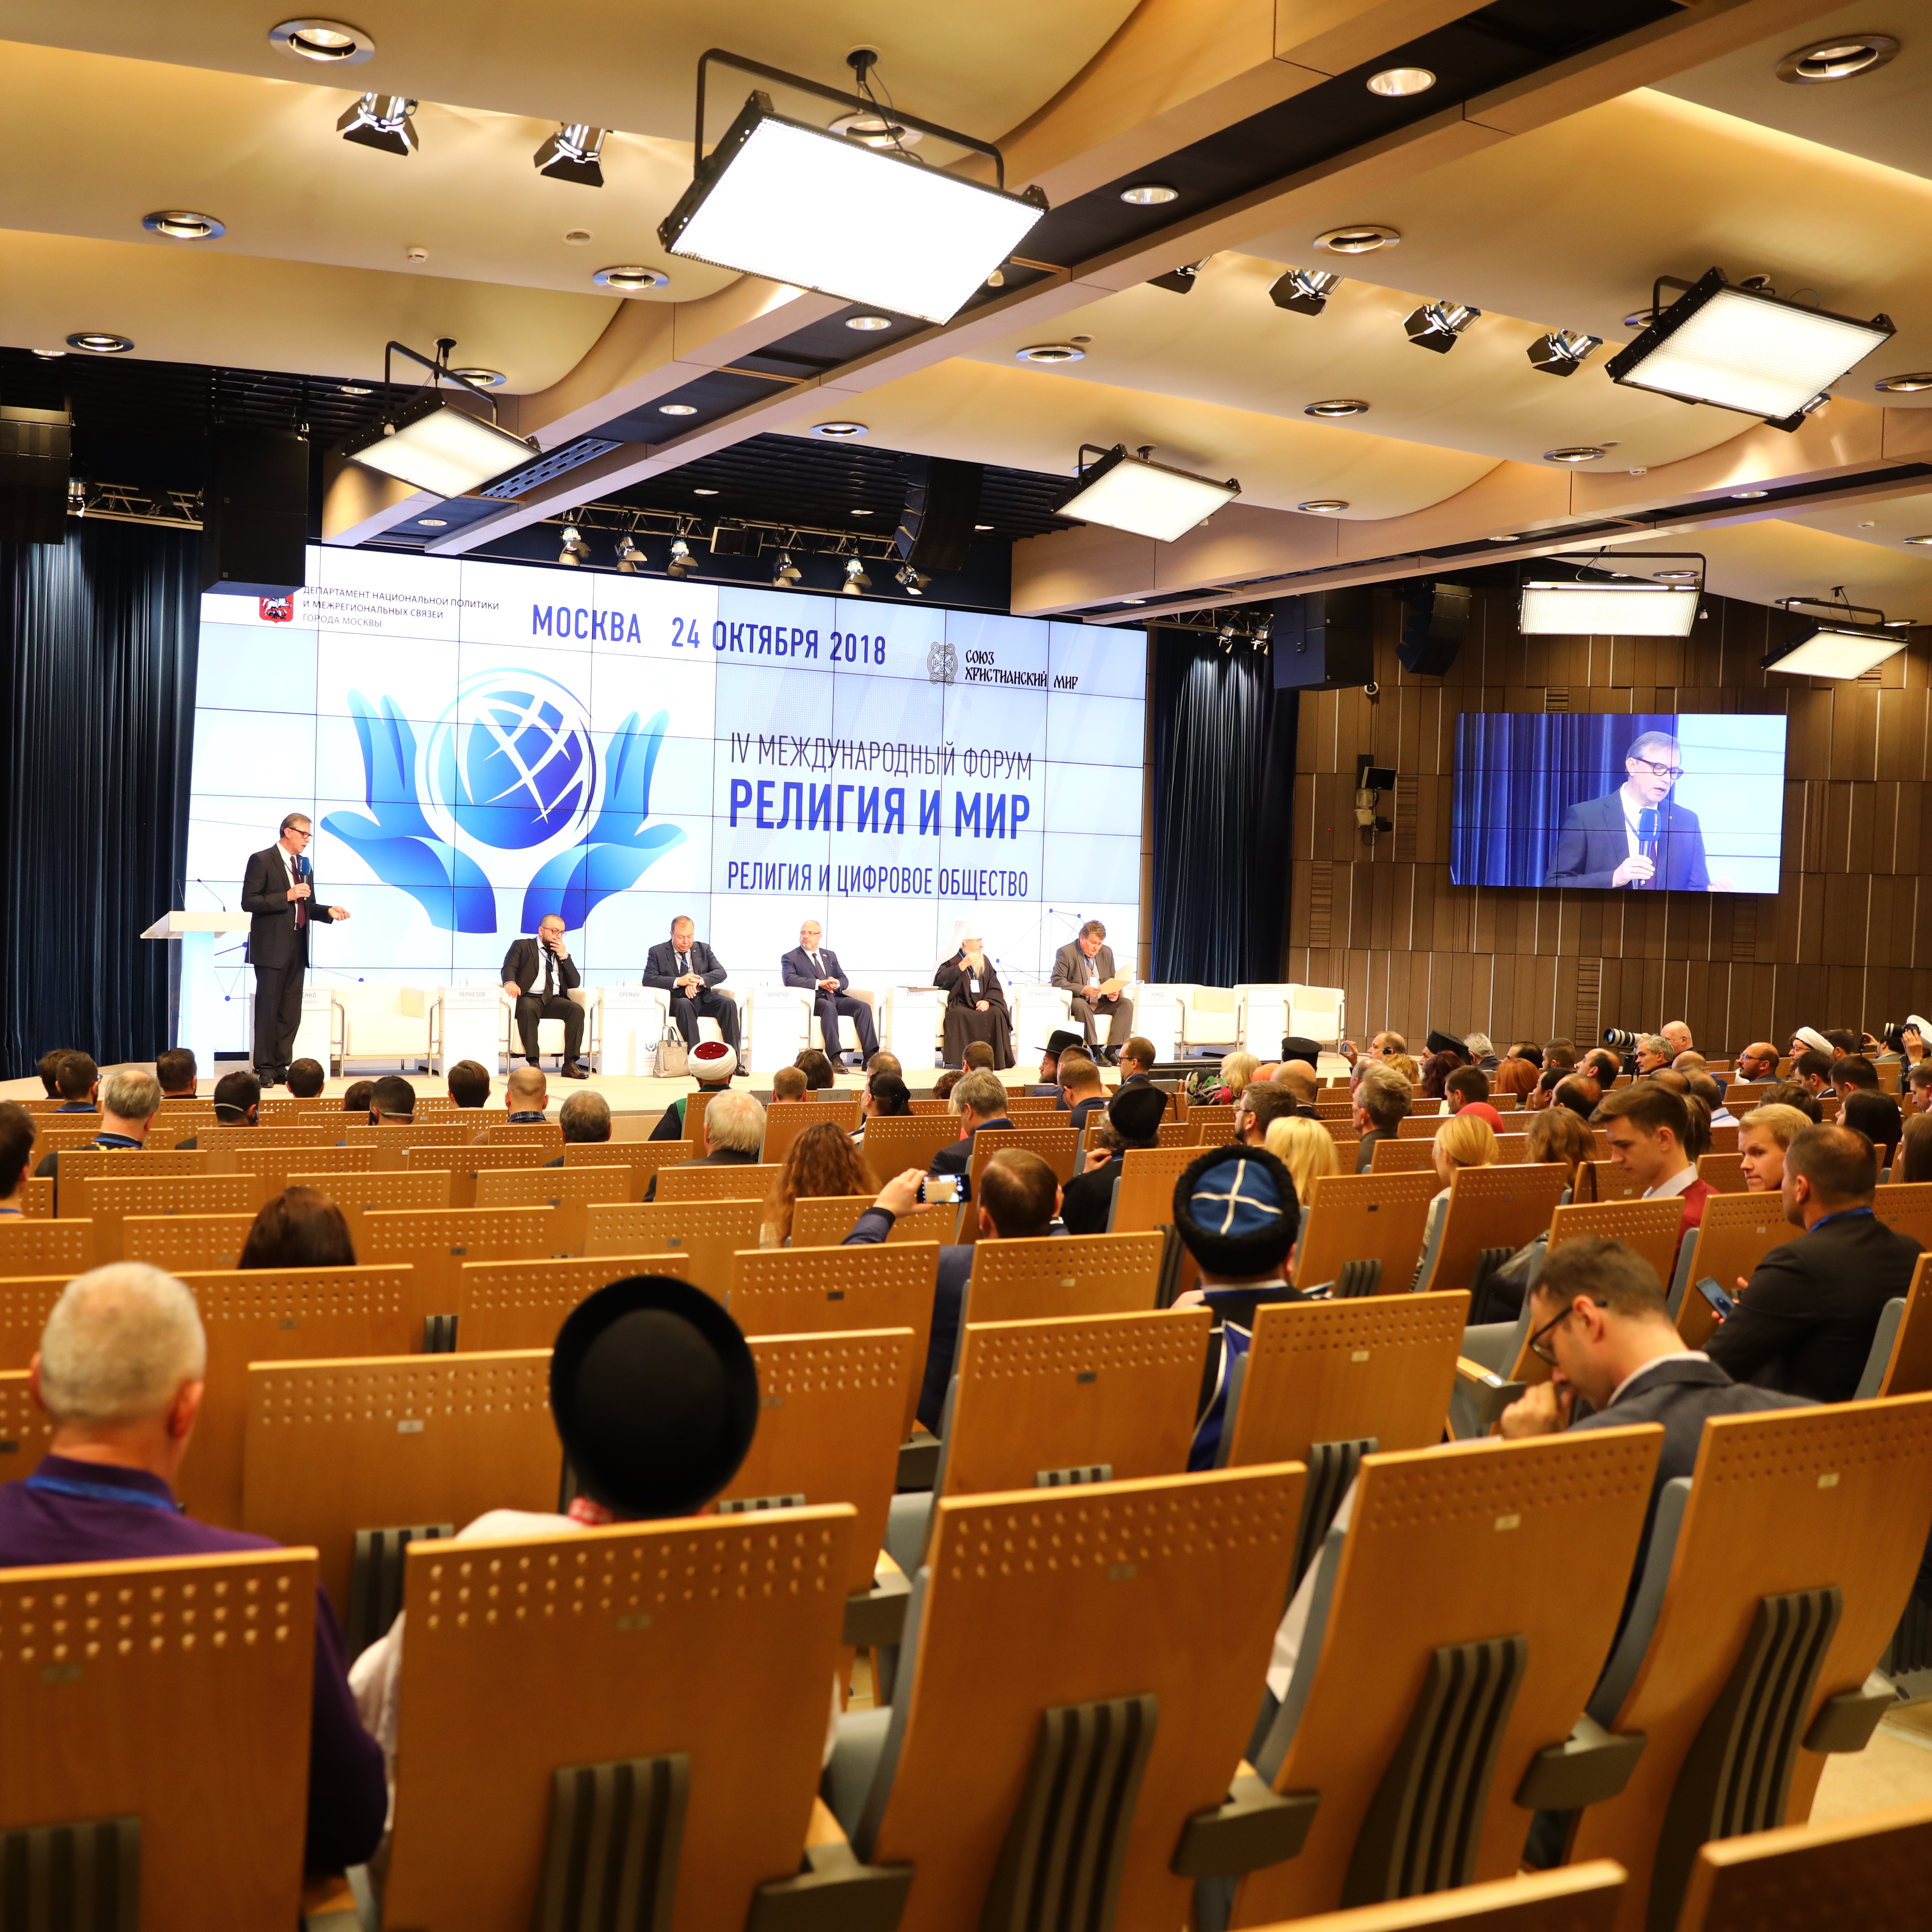 Итоги пленарного заседания IV Международного форума «Религия и Мир»